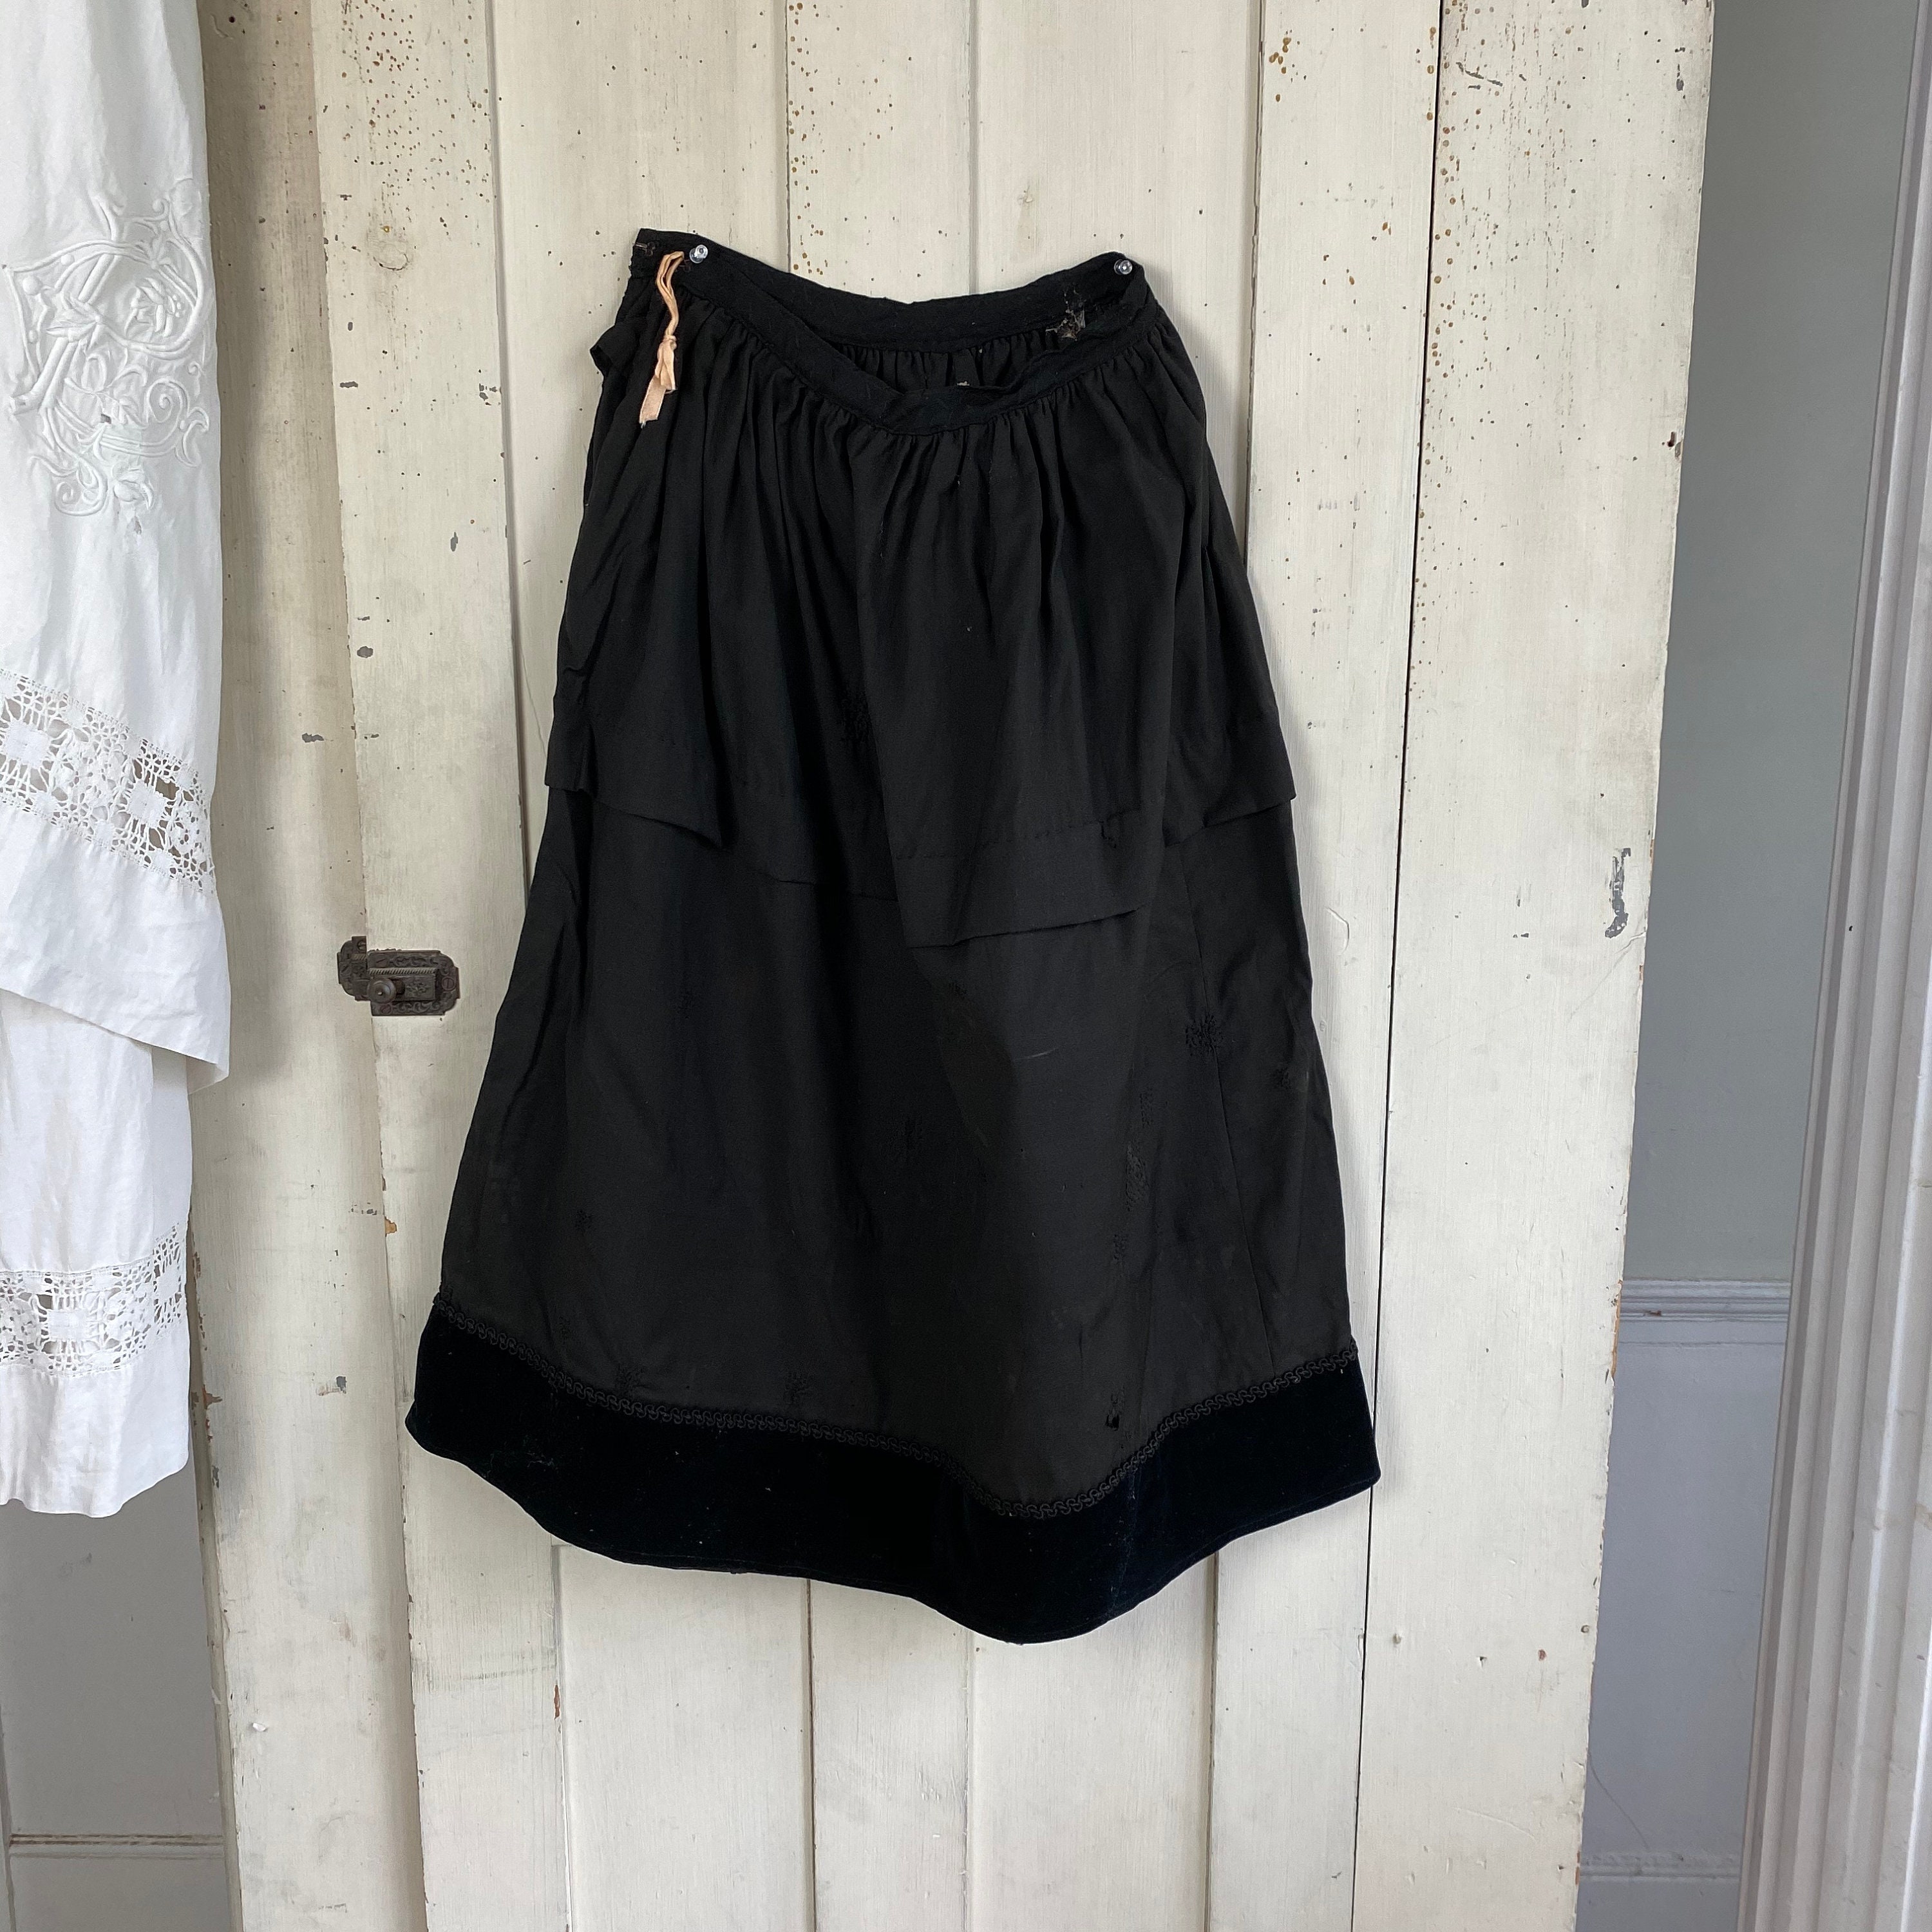 zwarte rok met fluwelen tot eind jaren 1800 - Etsy België